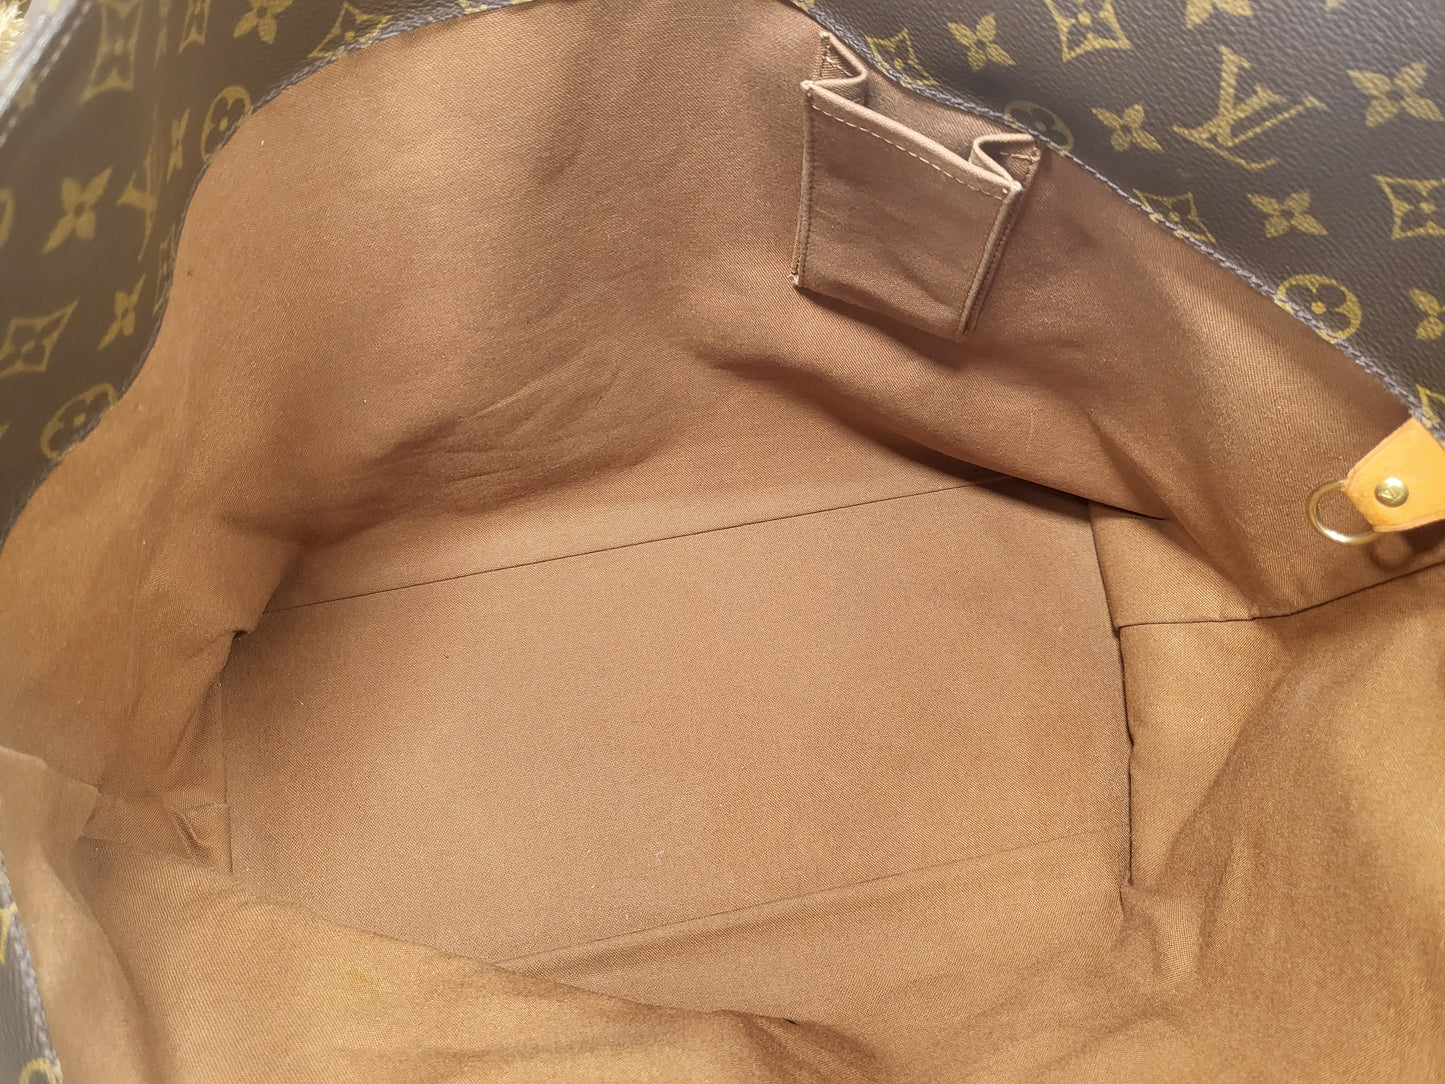 Authentic pre-owned Louis Vuitton Cabas Alto shoulder tote bag